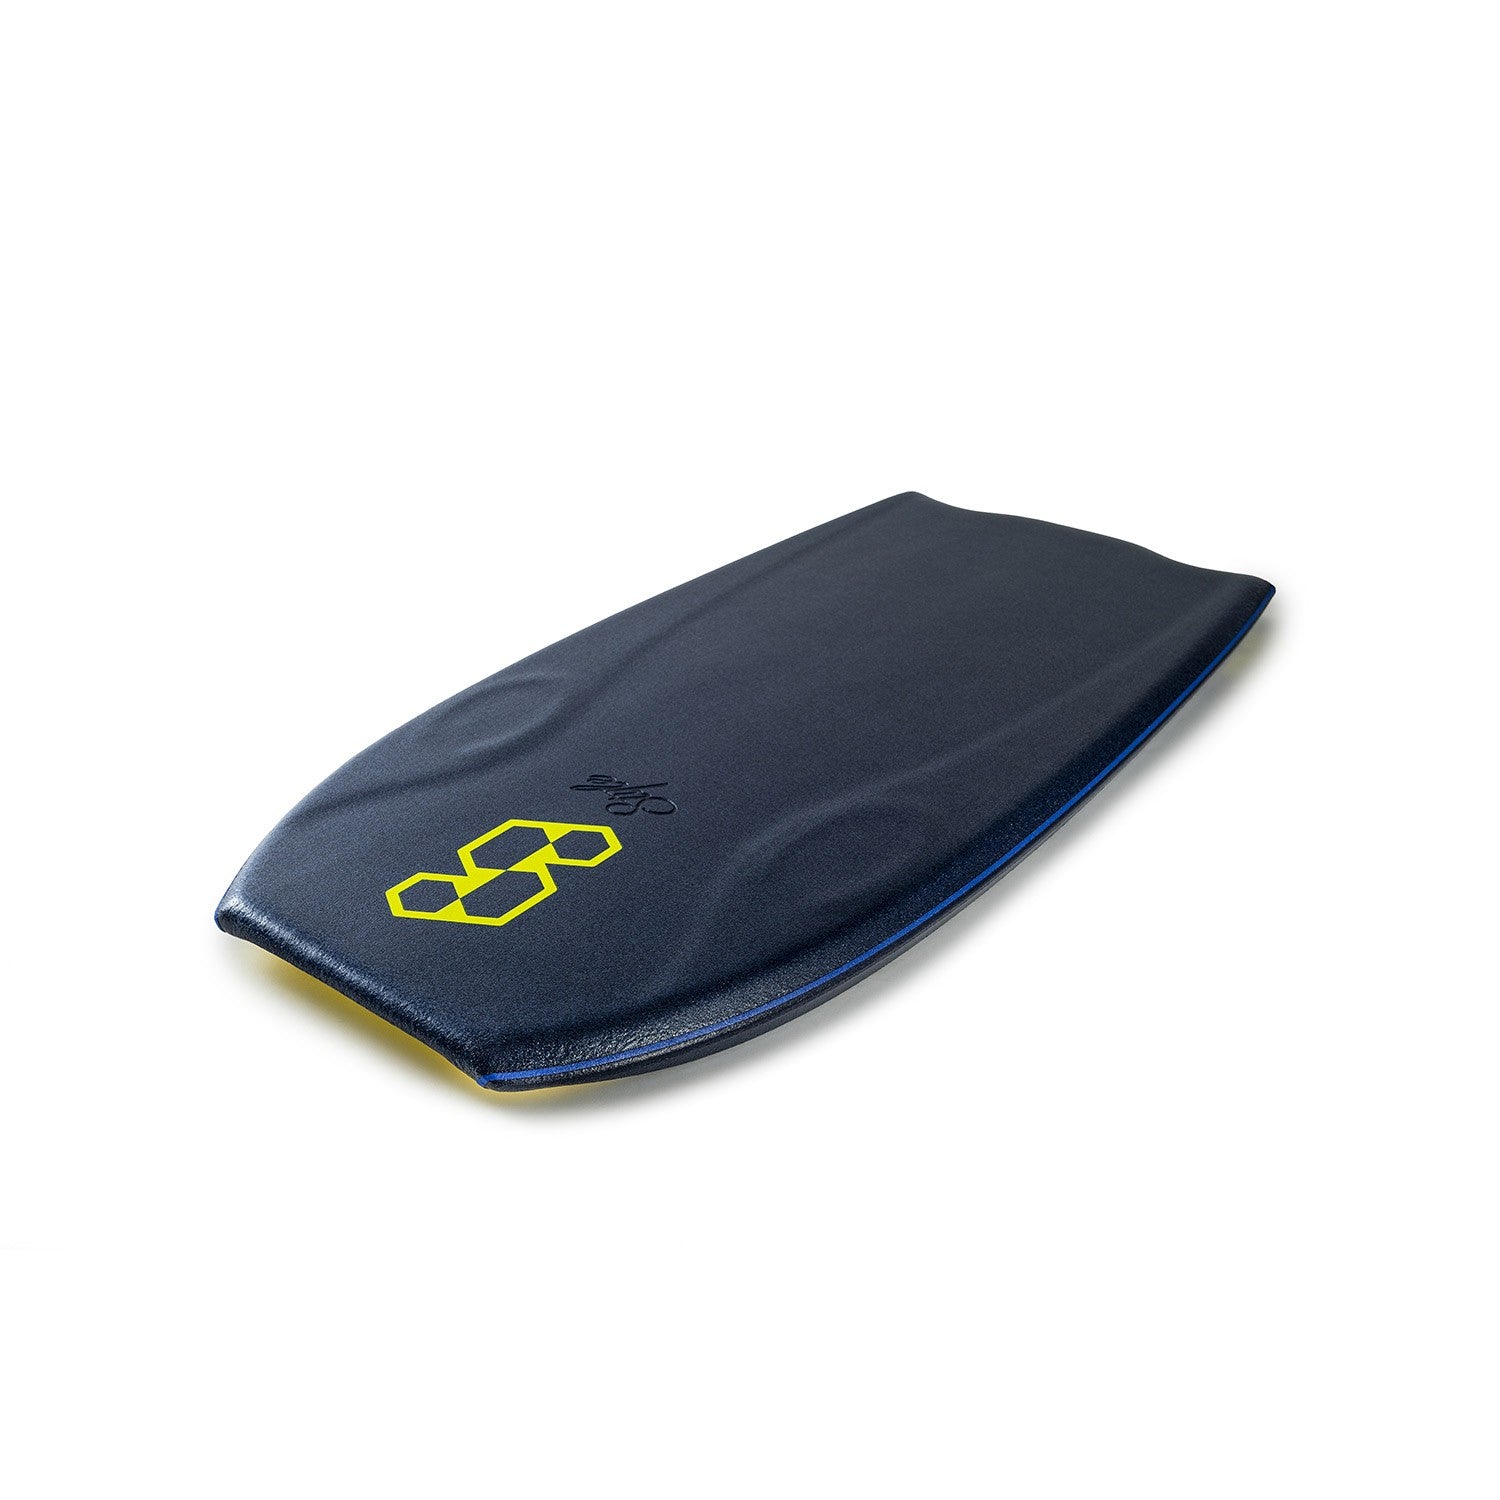 Science Bodyboard - Style LTD Flat Bat F4 PP - Midnight Blue / Yellow